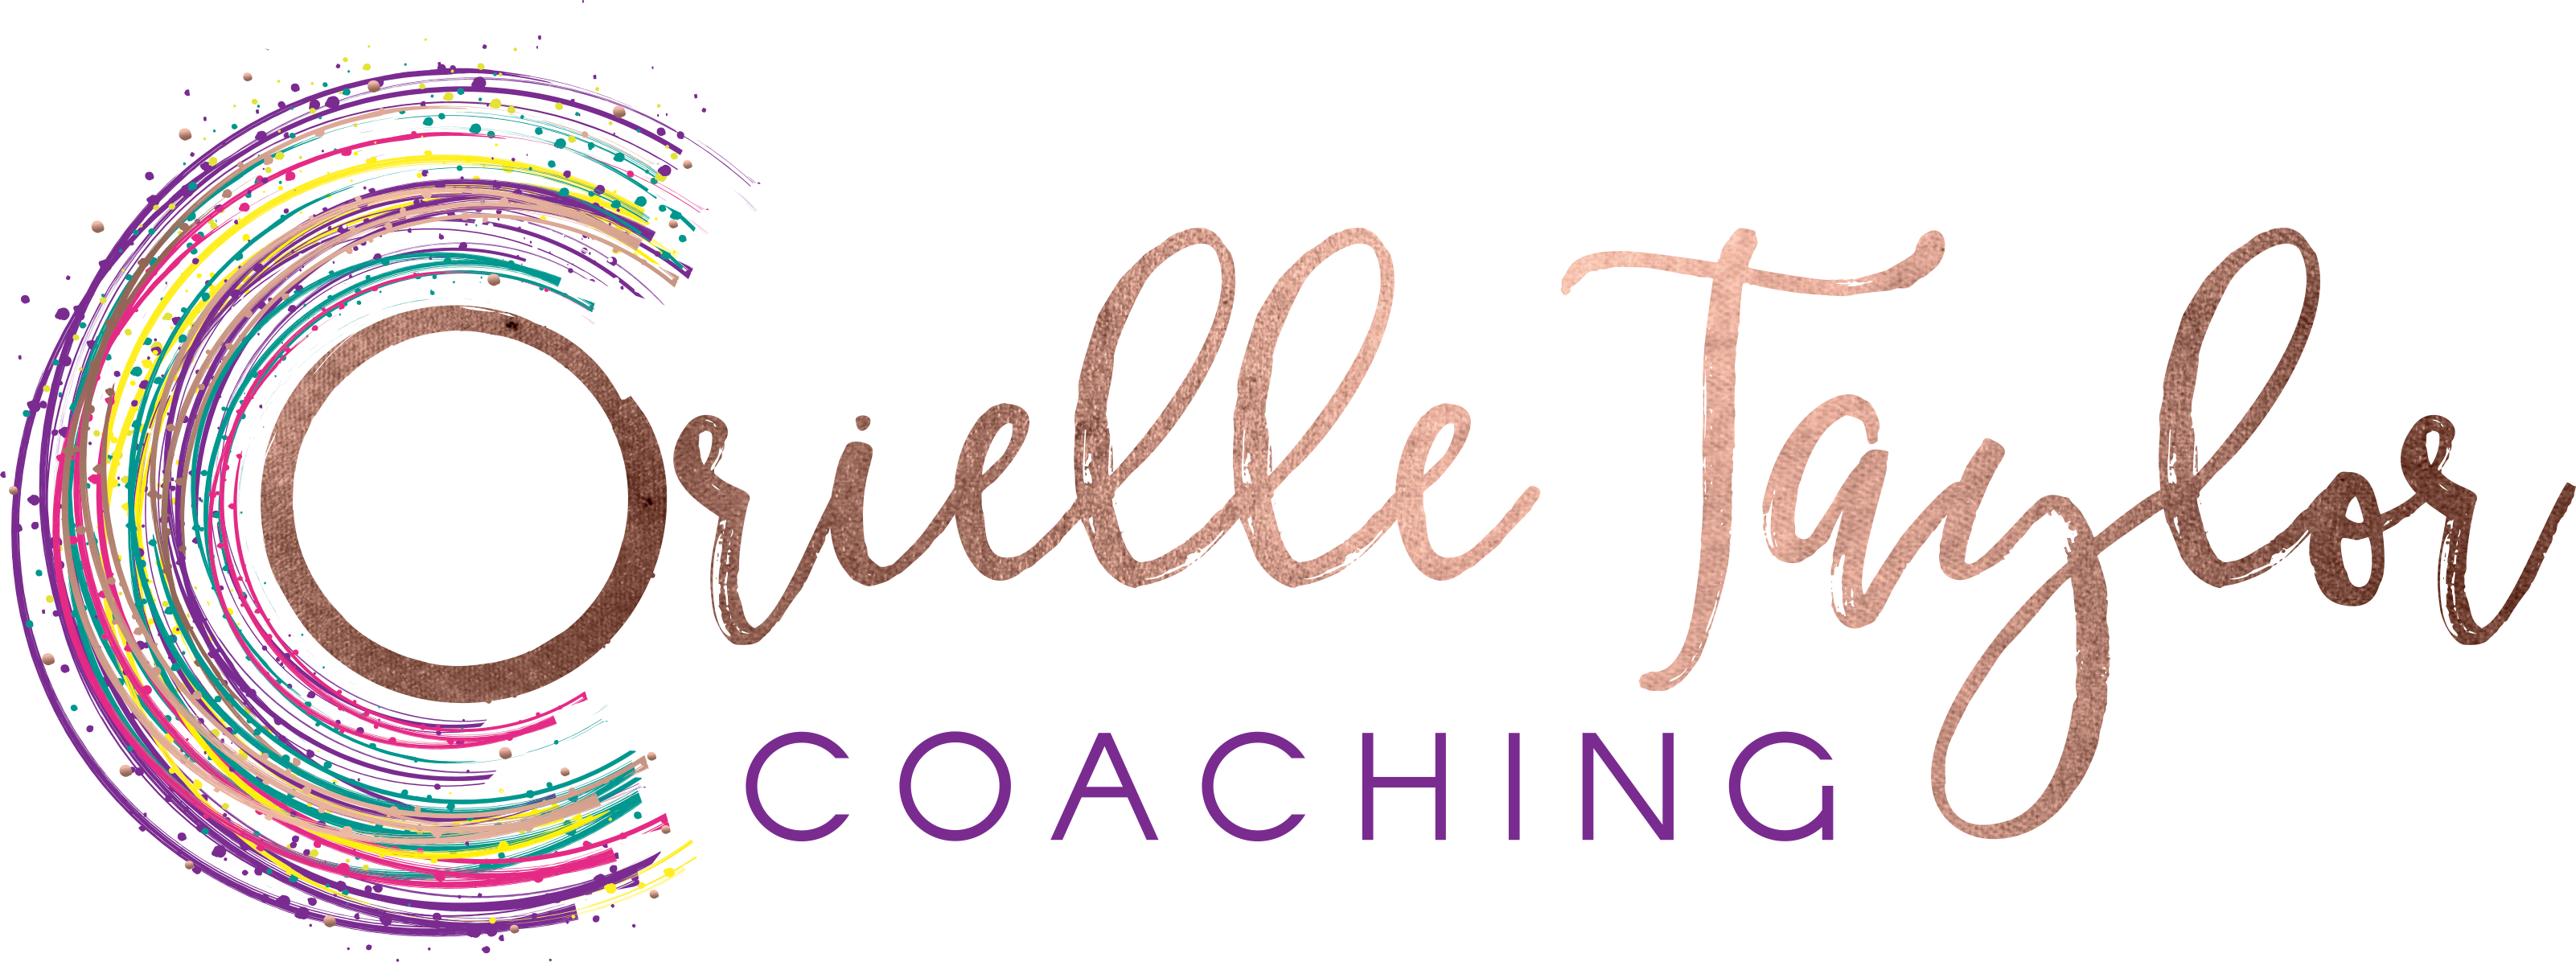 Orielle Taylor Coaching logo